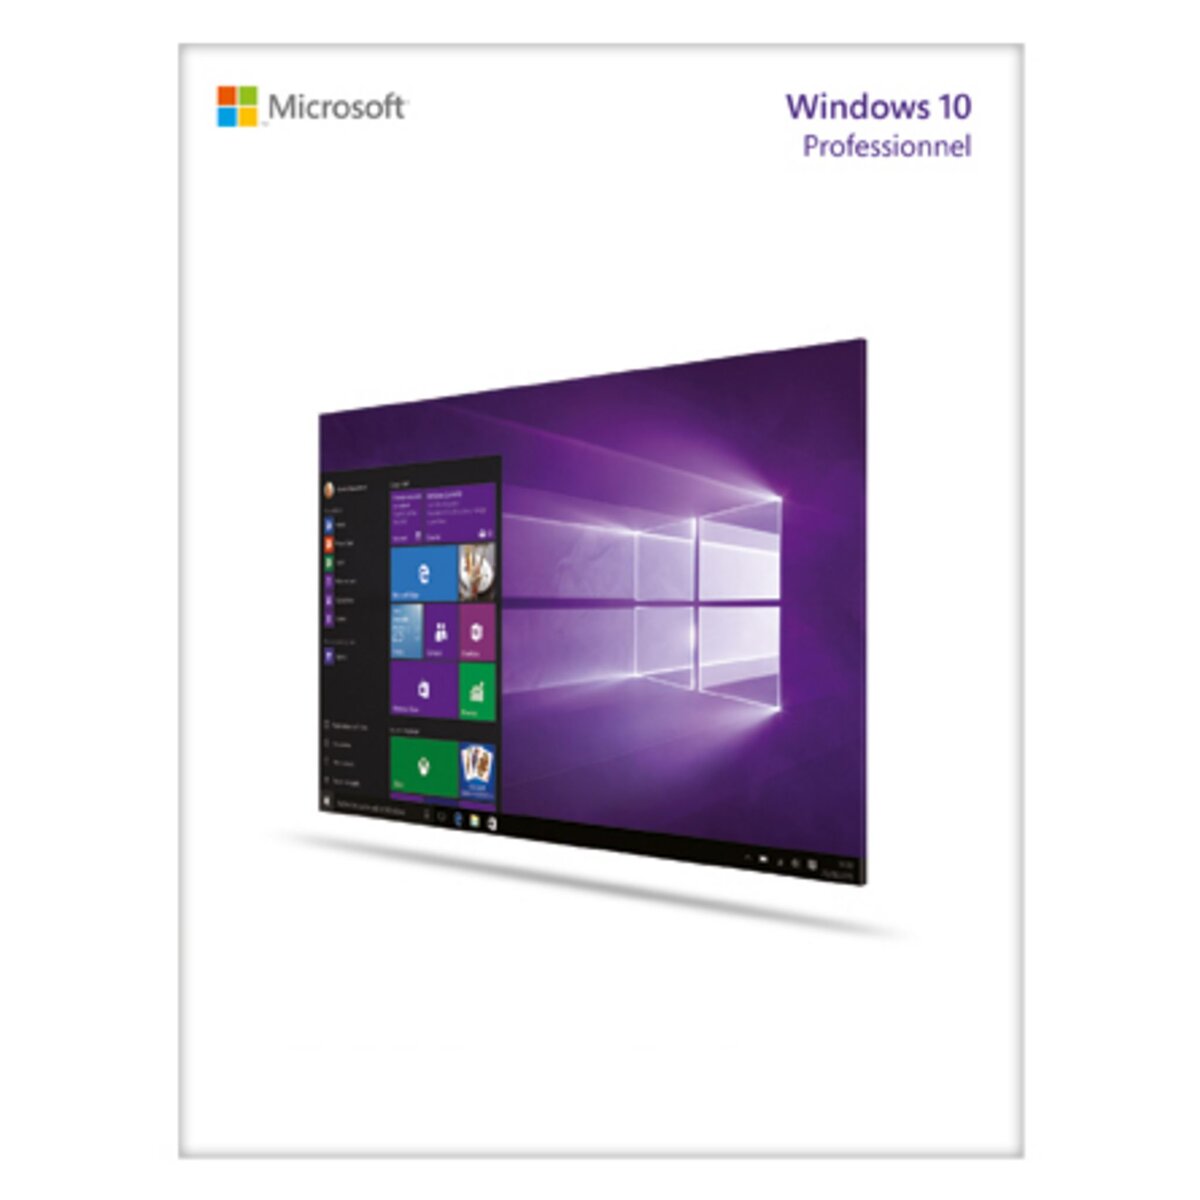 Logiciel Windows 10 Professionnel - PC